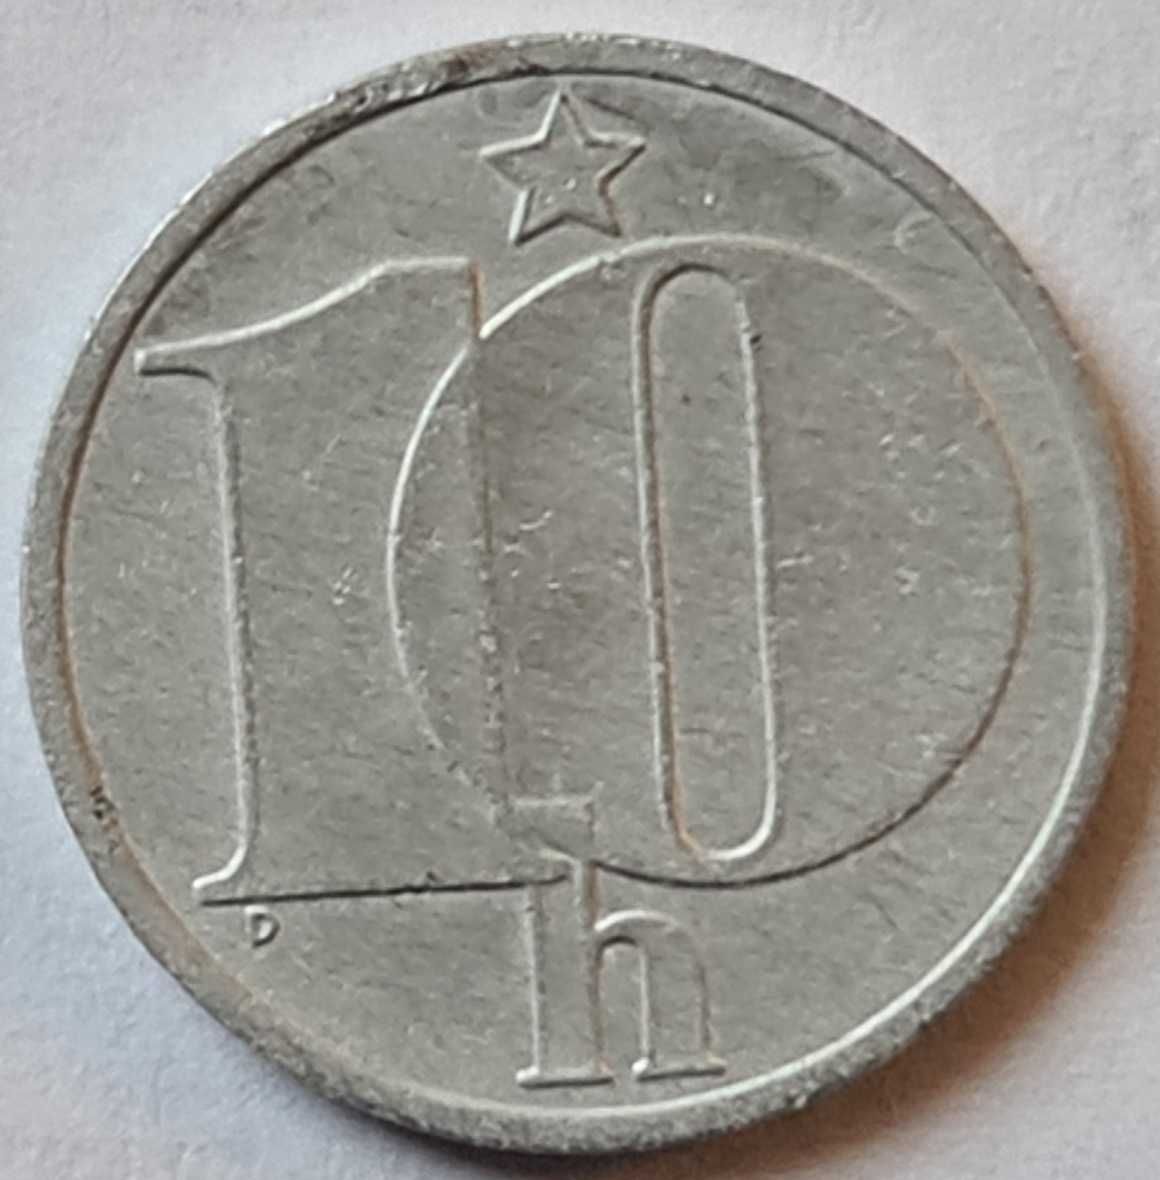 Moneta 10 Halerzy Czechosłowacja